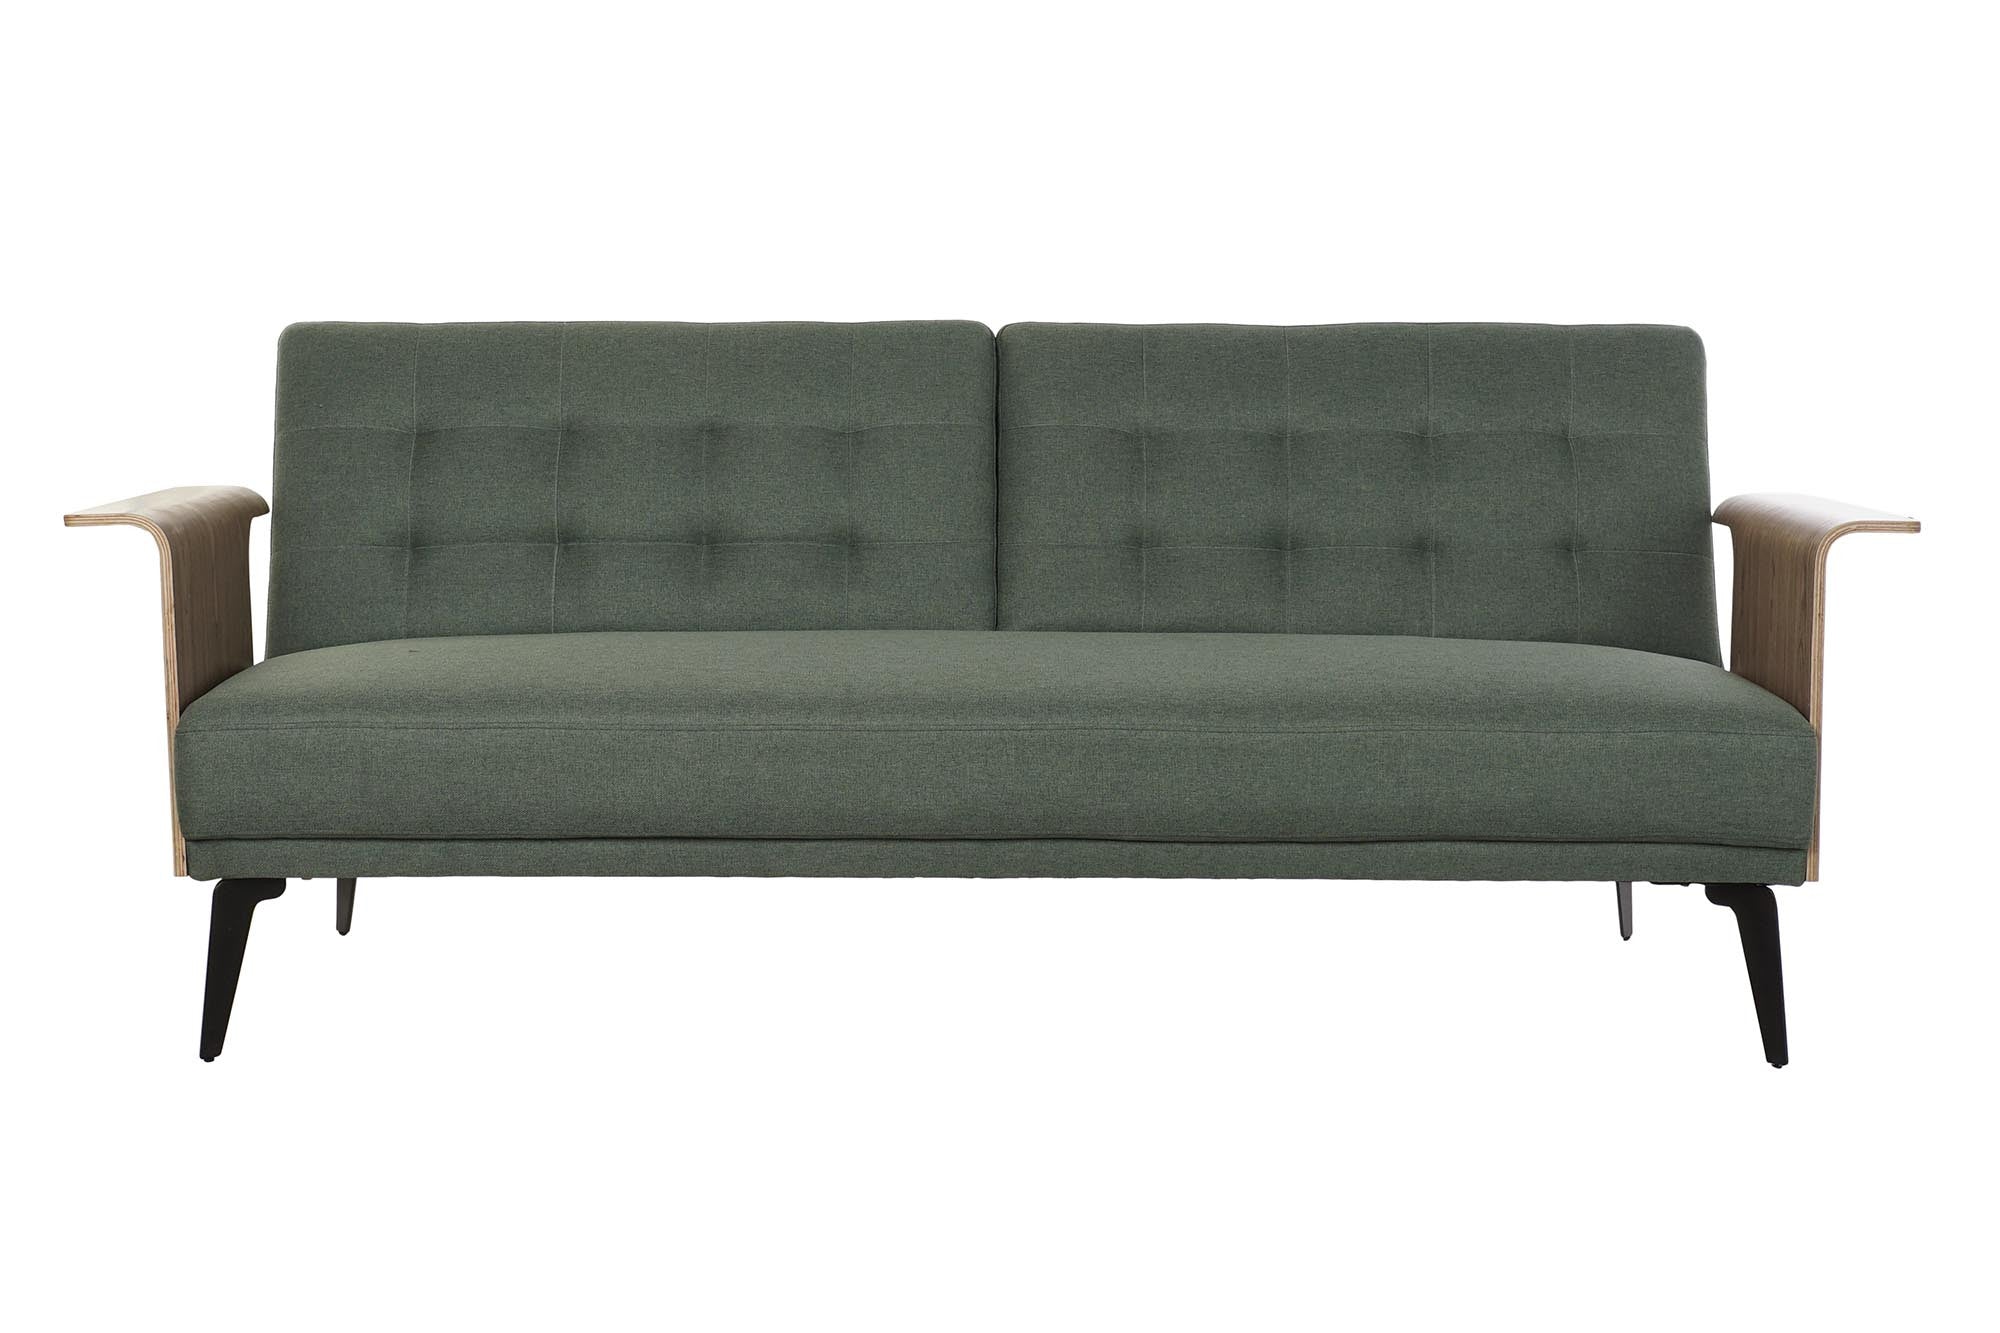 Convertible sofa Home Decor Green Polyester Eucalyptus wood (203 x 87 x 81 cm)